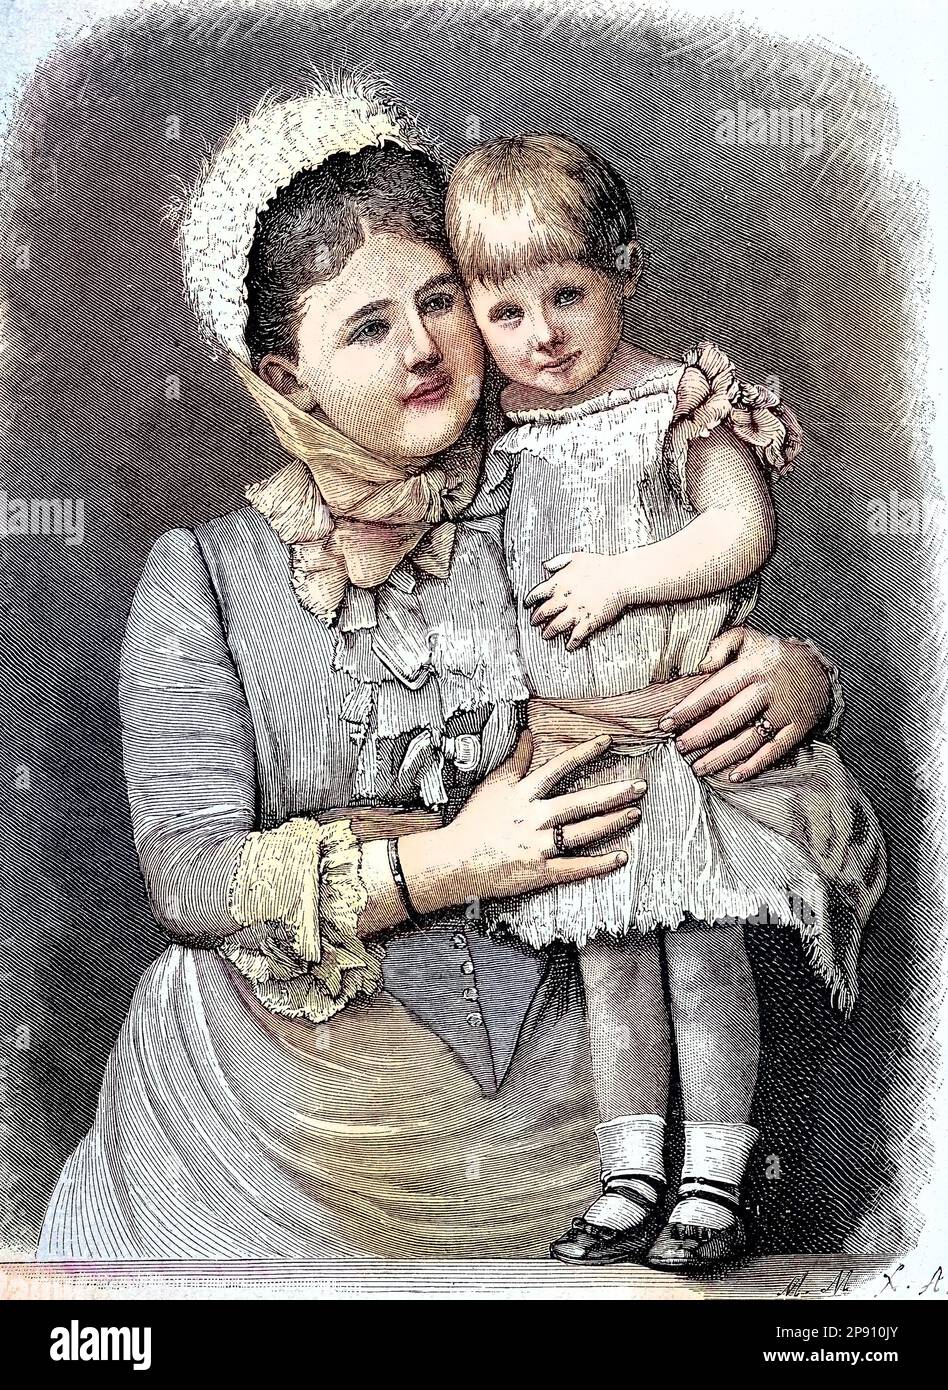 Adelheid Emma Wilhelmina Theresia von Waldeck und Pyrmont, 1858 - 1934, war Königin der Niederlande und Großherzogin von Luxemburg mit ihrem einzigen Kind, der späteren Königin Wilhelmina, Historisch, digital restaurierte Reproduktion von einer Vorlage aus dem 19. Jahrhundert Stock Photo